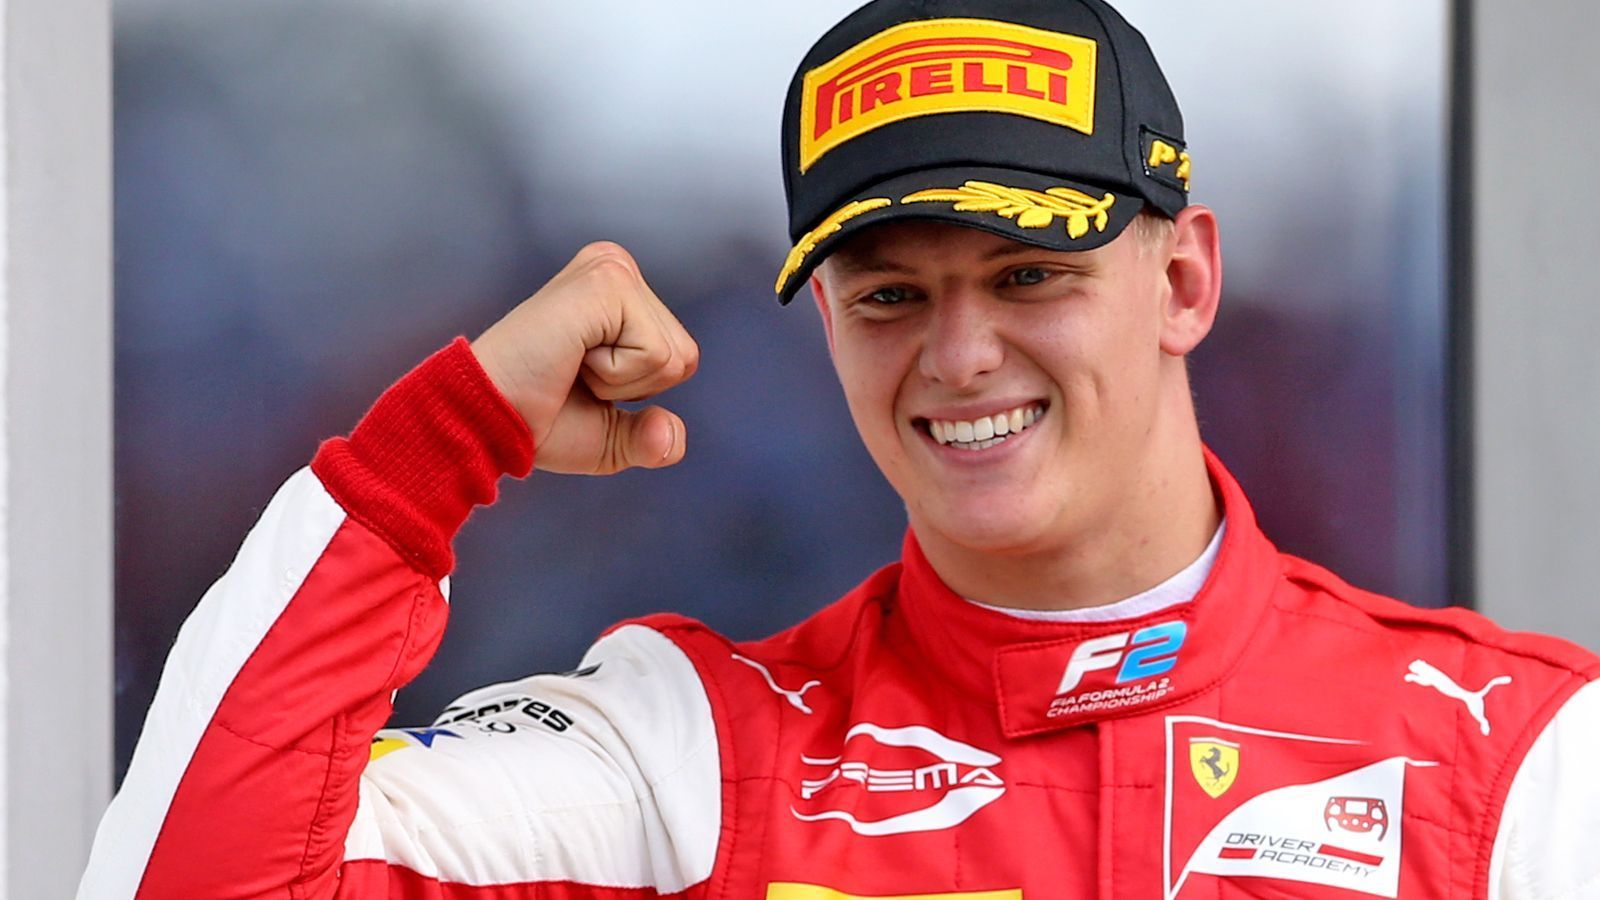 
                <strong>Mick Schumacher</strong><br>
                Team: Prema RacingAlter: Nationalität: DeutschlandBitterer Saisonstart für Schumacher Junior. Und es wird nicht einfacher. Durch mangelnde Pace im Qualifying und sich plötzlich auslösende Feuerlöscher im Rennen, fährt Mick aktuell den Erwartungen hinterher, die zugegebenermaßen immens sind. Viele sehen nach der unglücklichen vergangenen Saison in diesem Jahr Schumachers Chance, den Durchbruch zu schaffen. Sollte Sebastian Vettel sich nächstes Jahr aus der F1 verabschieden, stünde Deutschland erstmal ohne eigenen Fahrer in der Königsklasse da. Das erhöht den Druck auf den Ferrari Academy Driver nochmal. Von der Race Pace her hat er jedoch allemal das Talent, diesen Weg zu bestreiten.
              